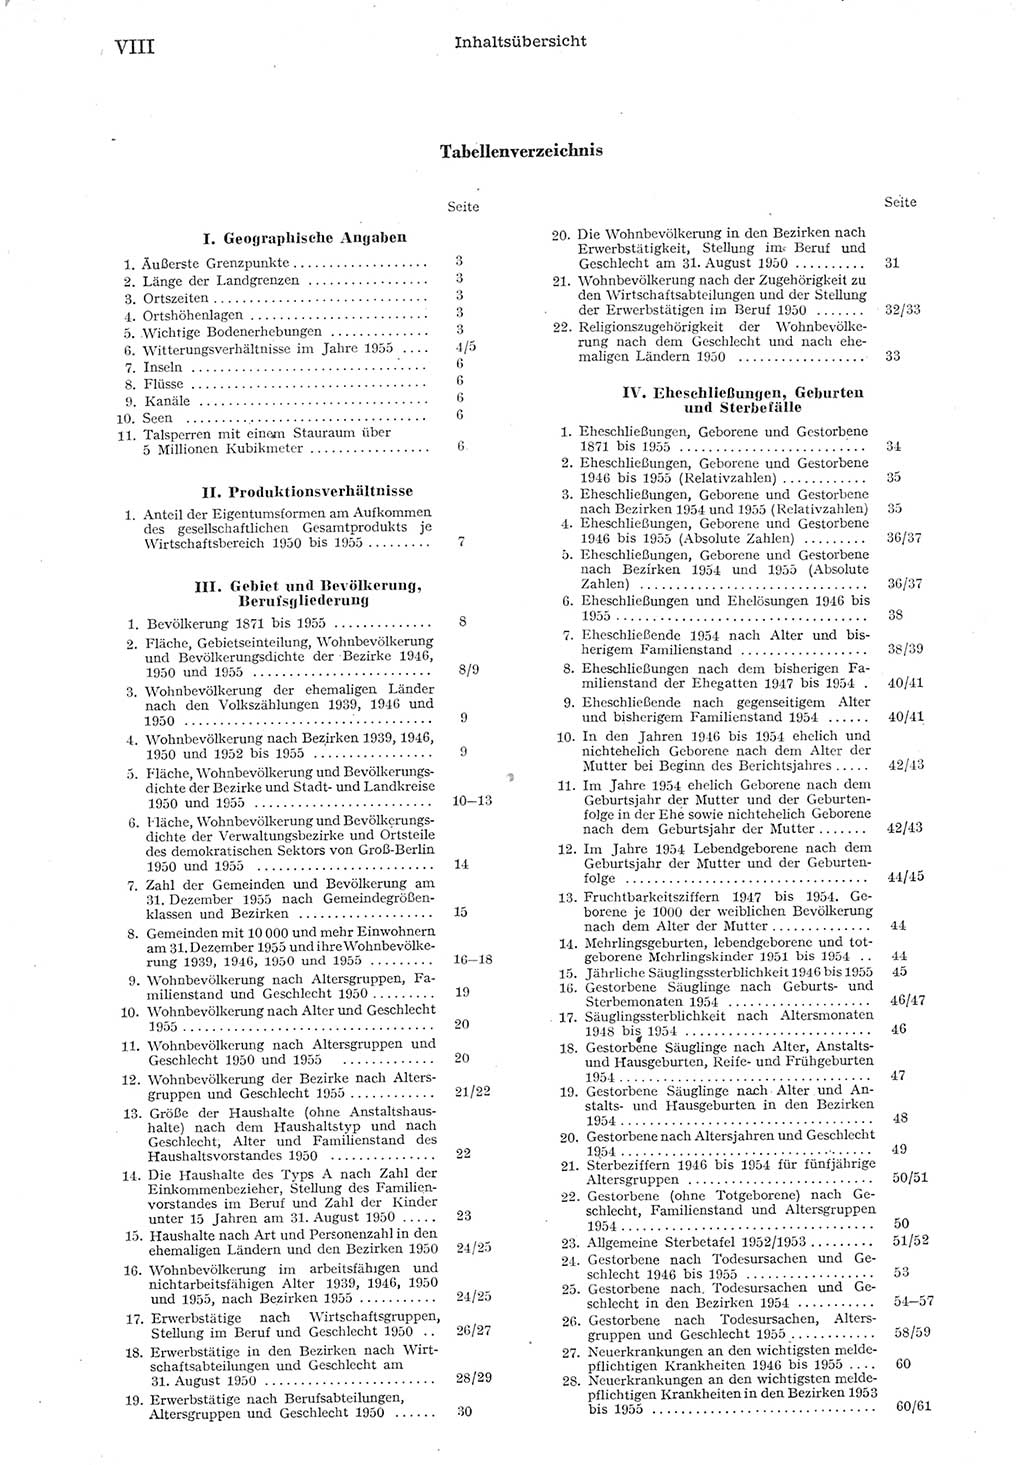 Statistisches Jahrbuch der Deutschen Demokratischen Republik (DDR) 1955, Seite 8 (Stat. Jb. DDR 1955, S. 8)